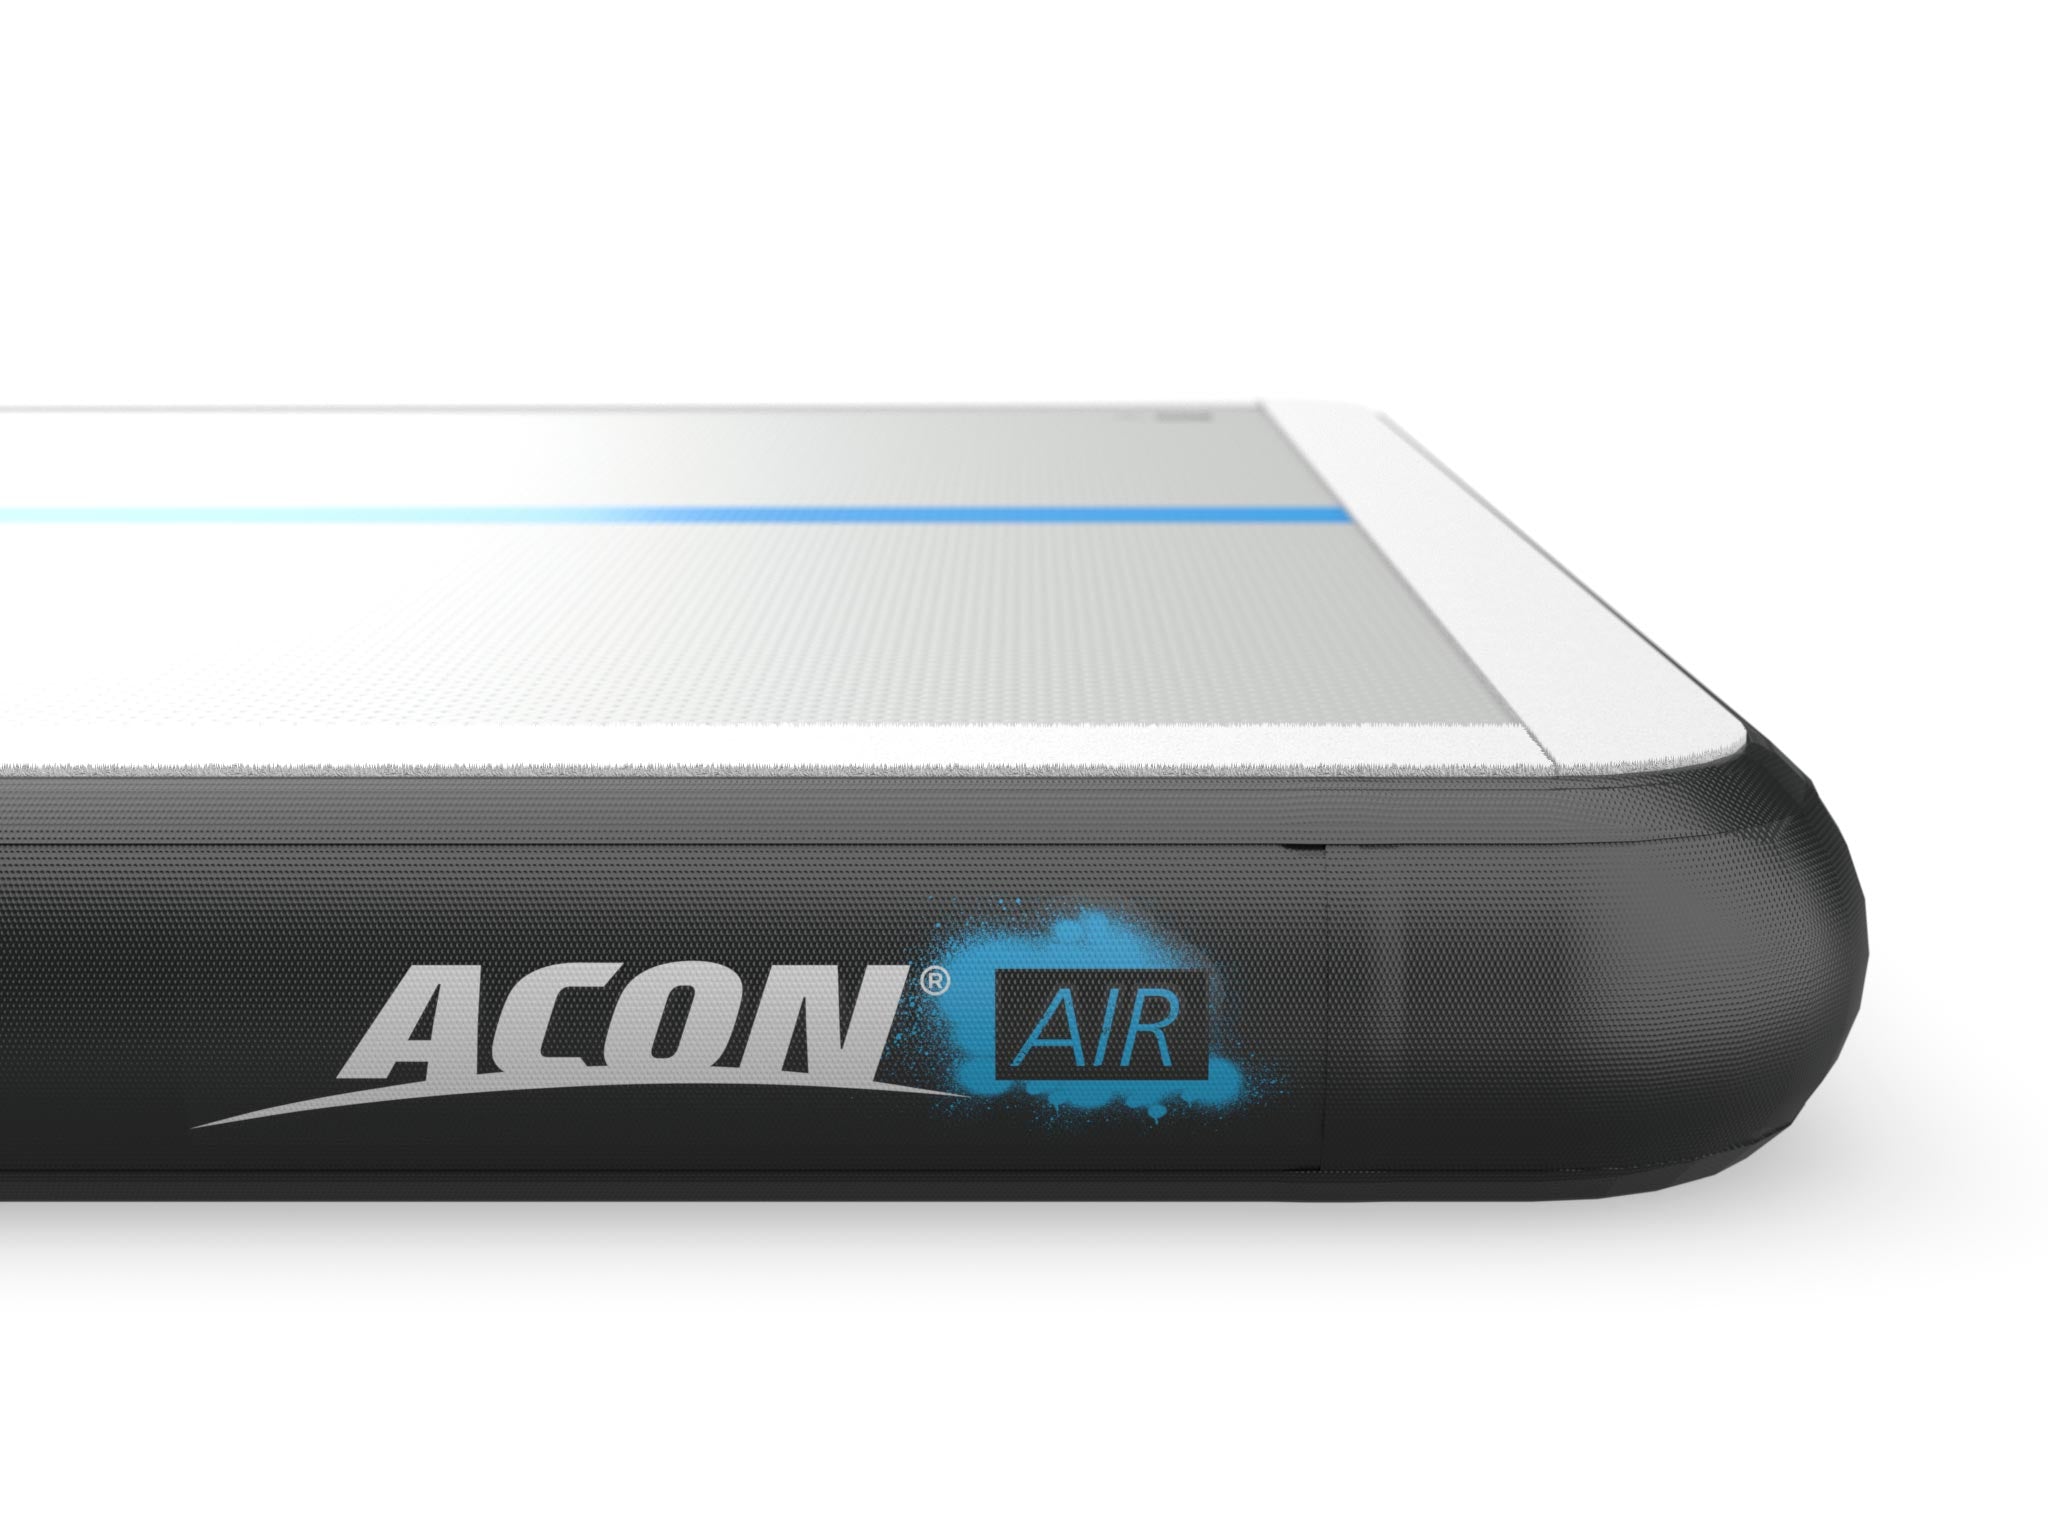 ACON Stora AirTrack 4x4m - acon-se - detaljer av Logo